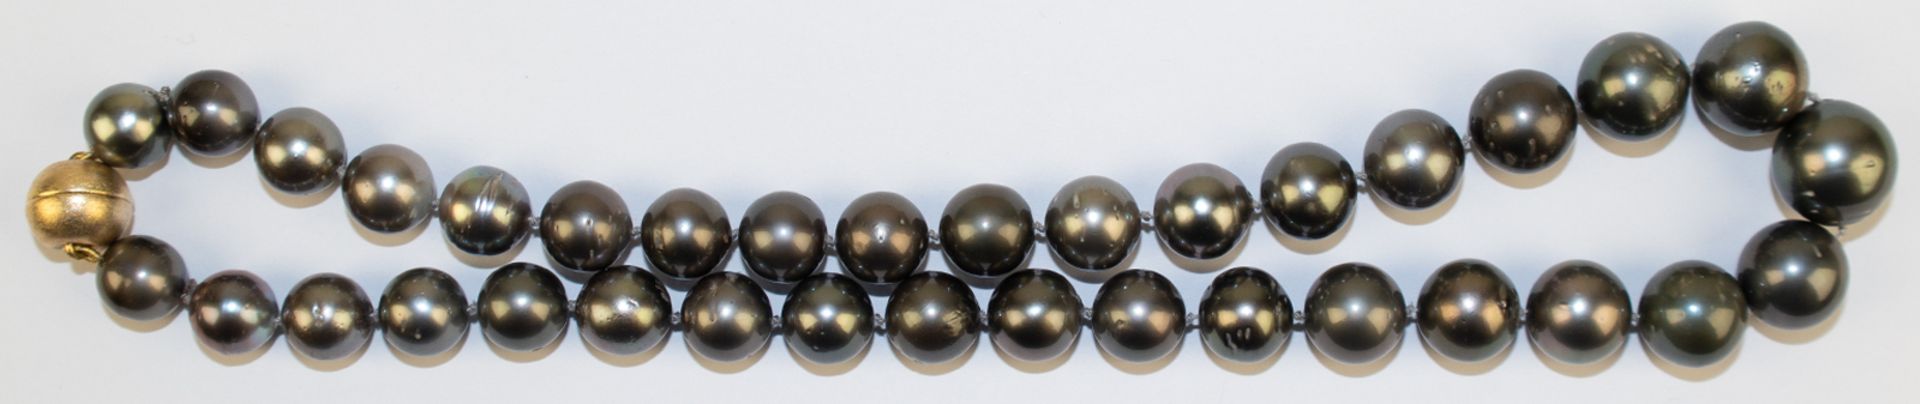 Dunkelgraue Tahiti-Perlenkette, Dm. der Perlen von ca. 11-16 mm, mit natürlichen Wachstumsmerkmalen